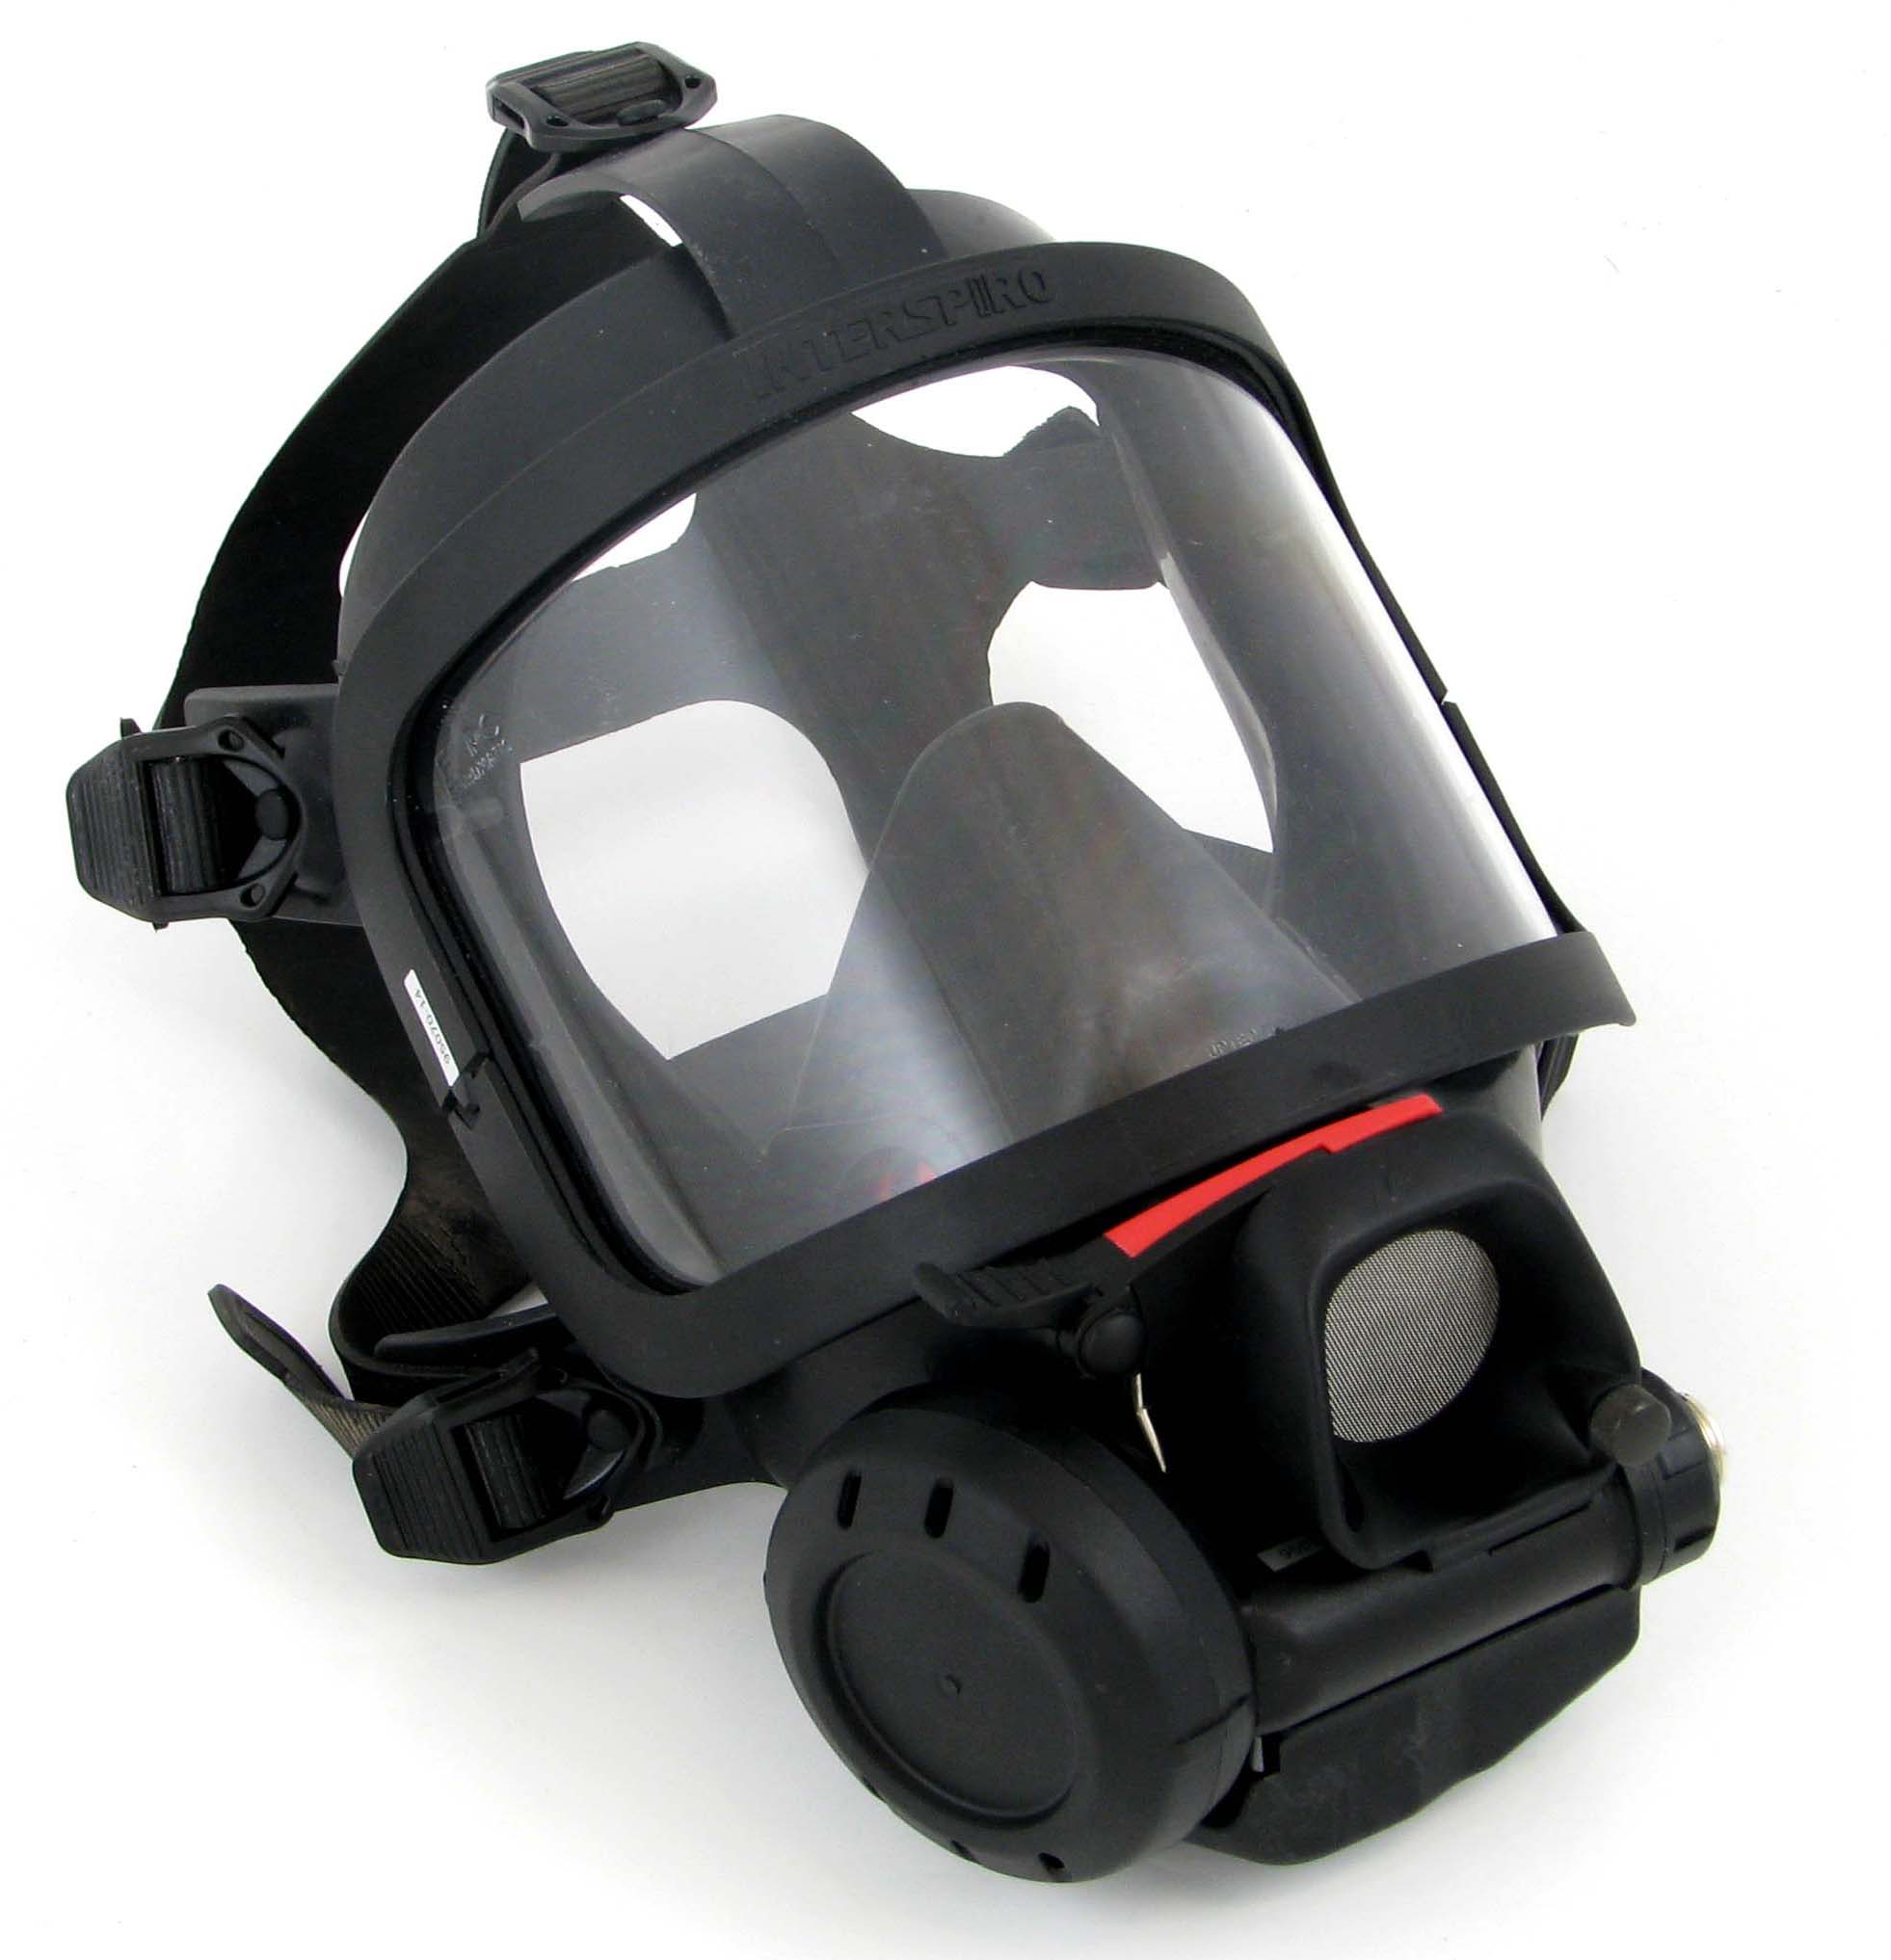 S-H Umgebungsluftklappe Mask ohne Lungenautomat, Naturgummi, Version für Helmhalter, Std (M/L) - Int